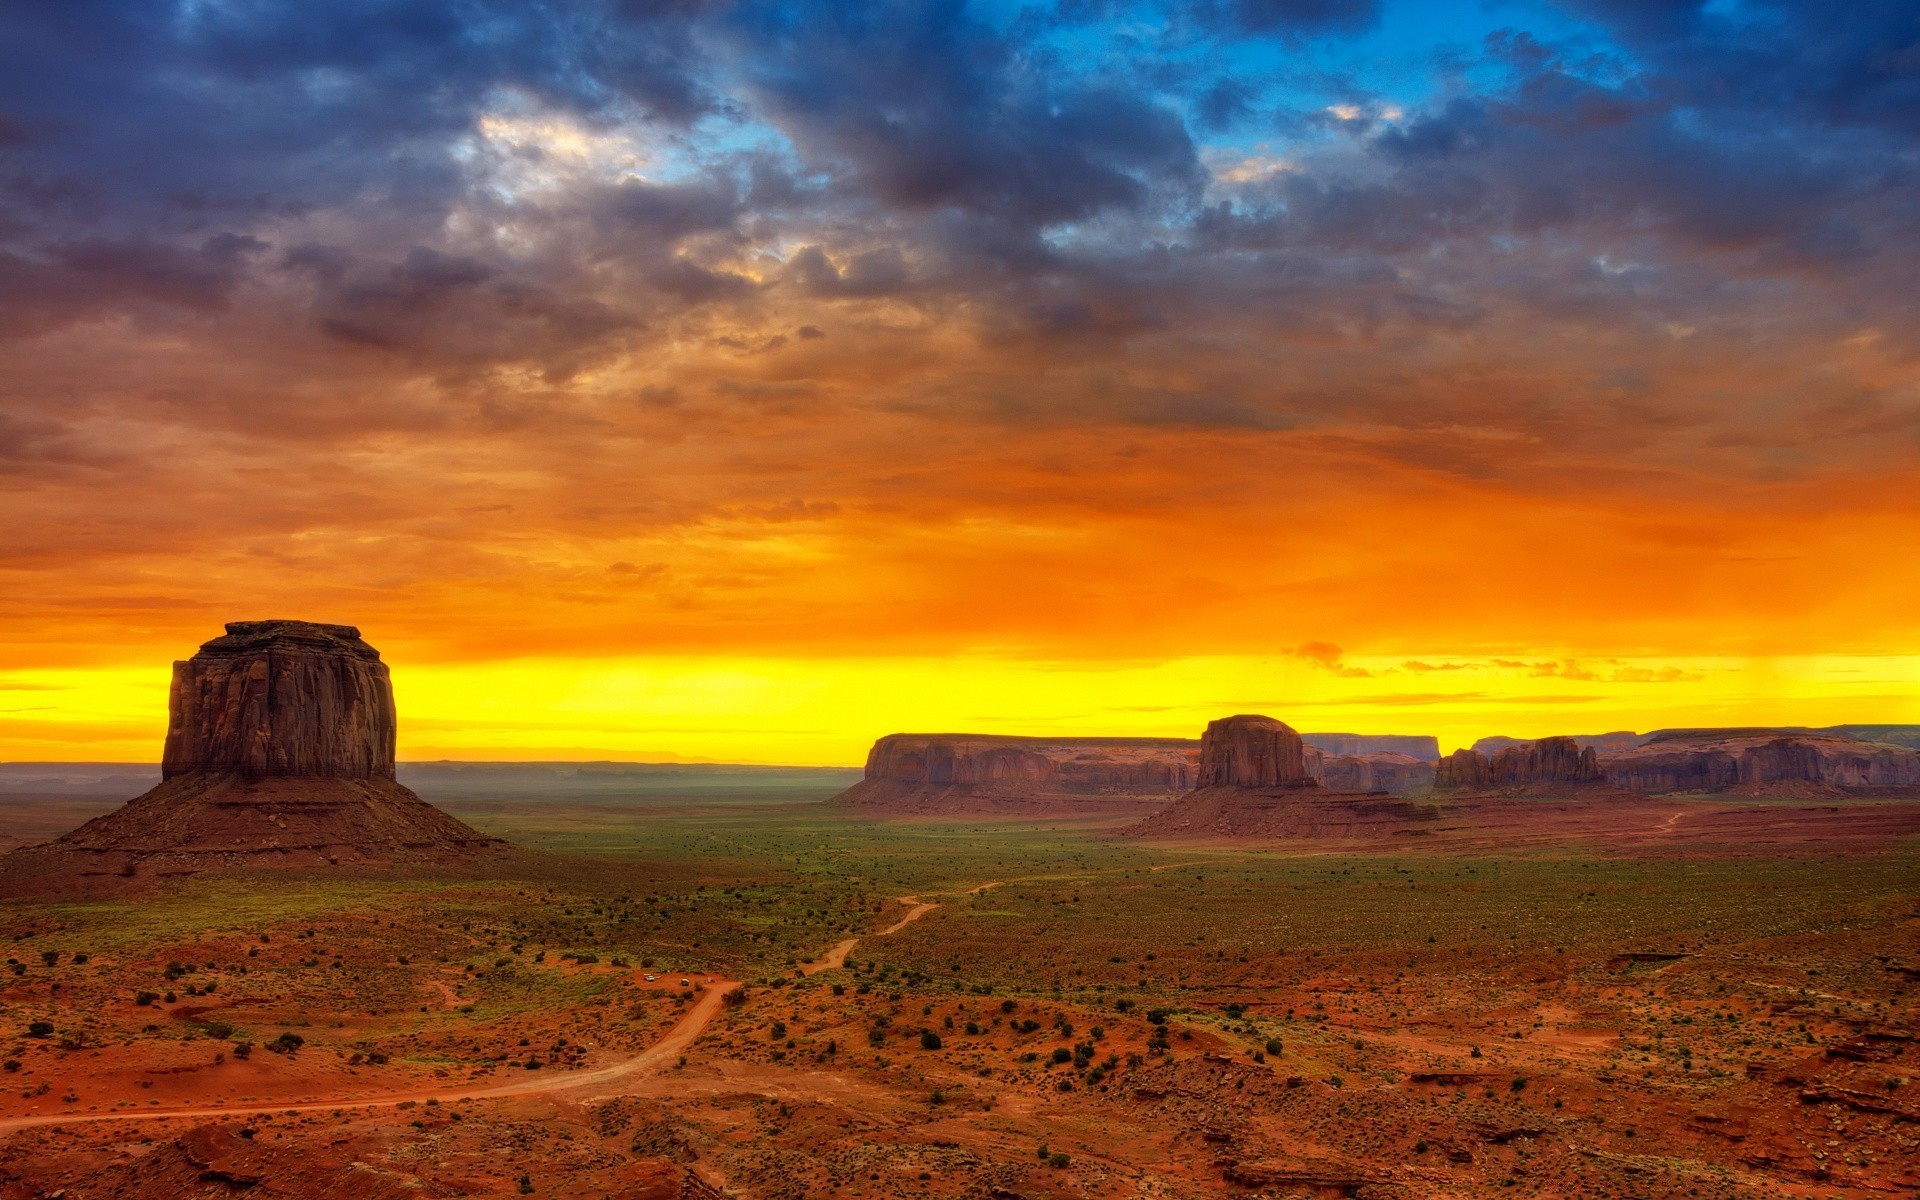 desert sunset landscape dawn travel sky outdoors sandstone dusk dry nature evening arid rock scenic